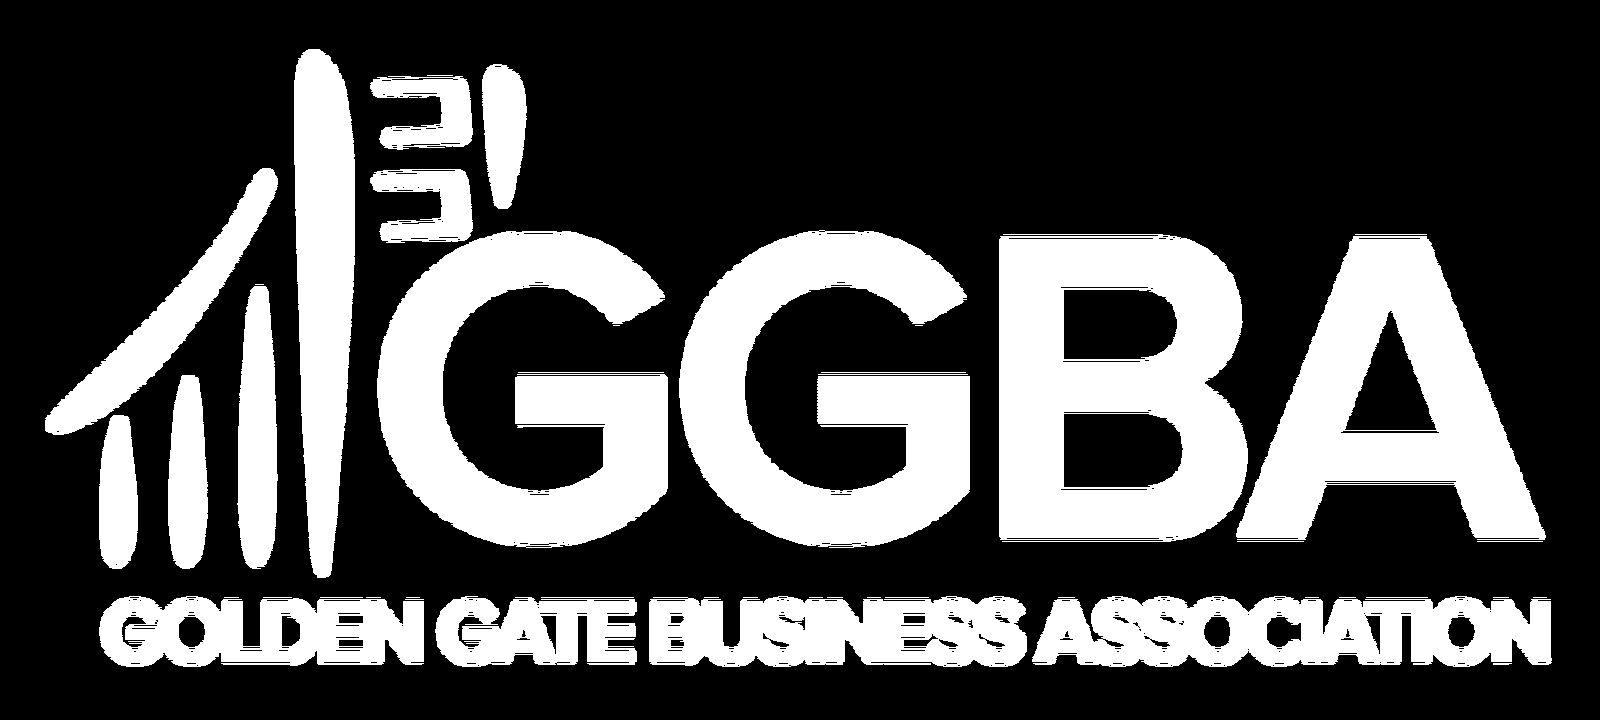 GGBA logo 01